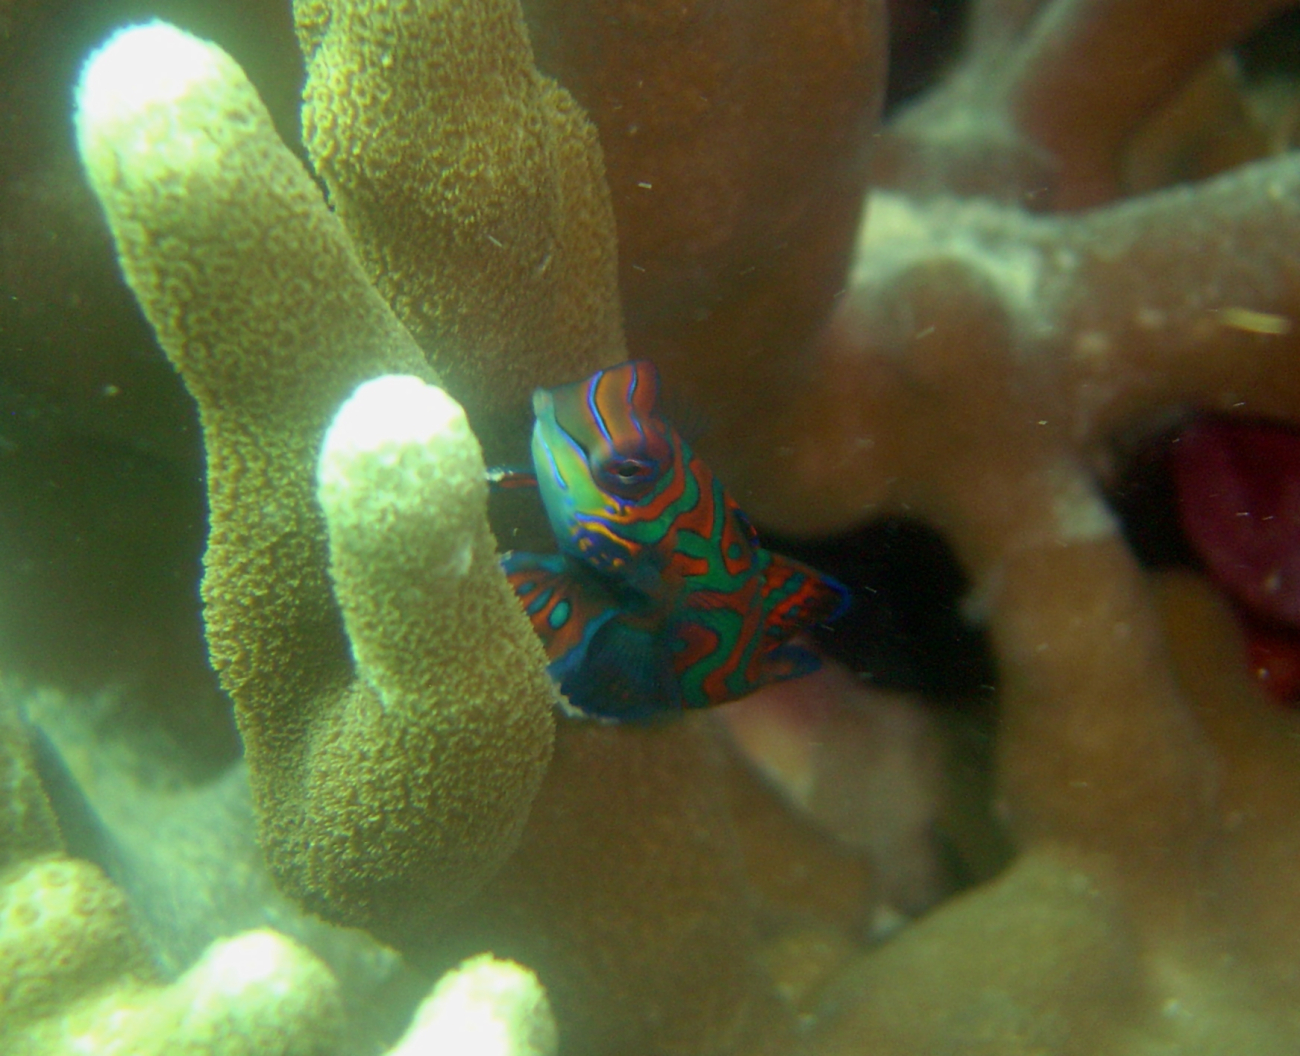 Mandarinfish (Synchiropus splendidus)